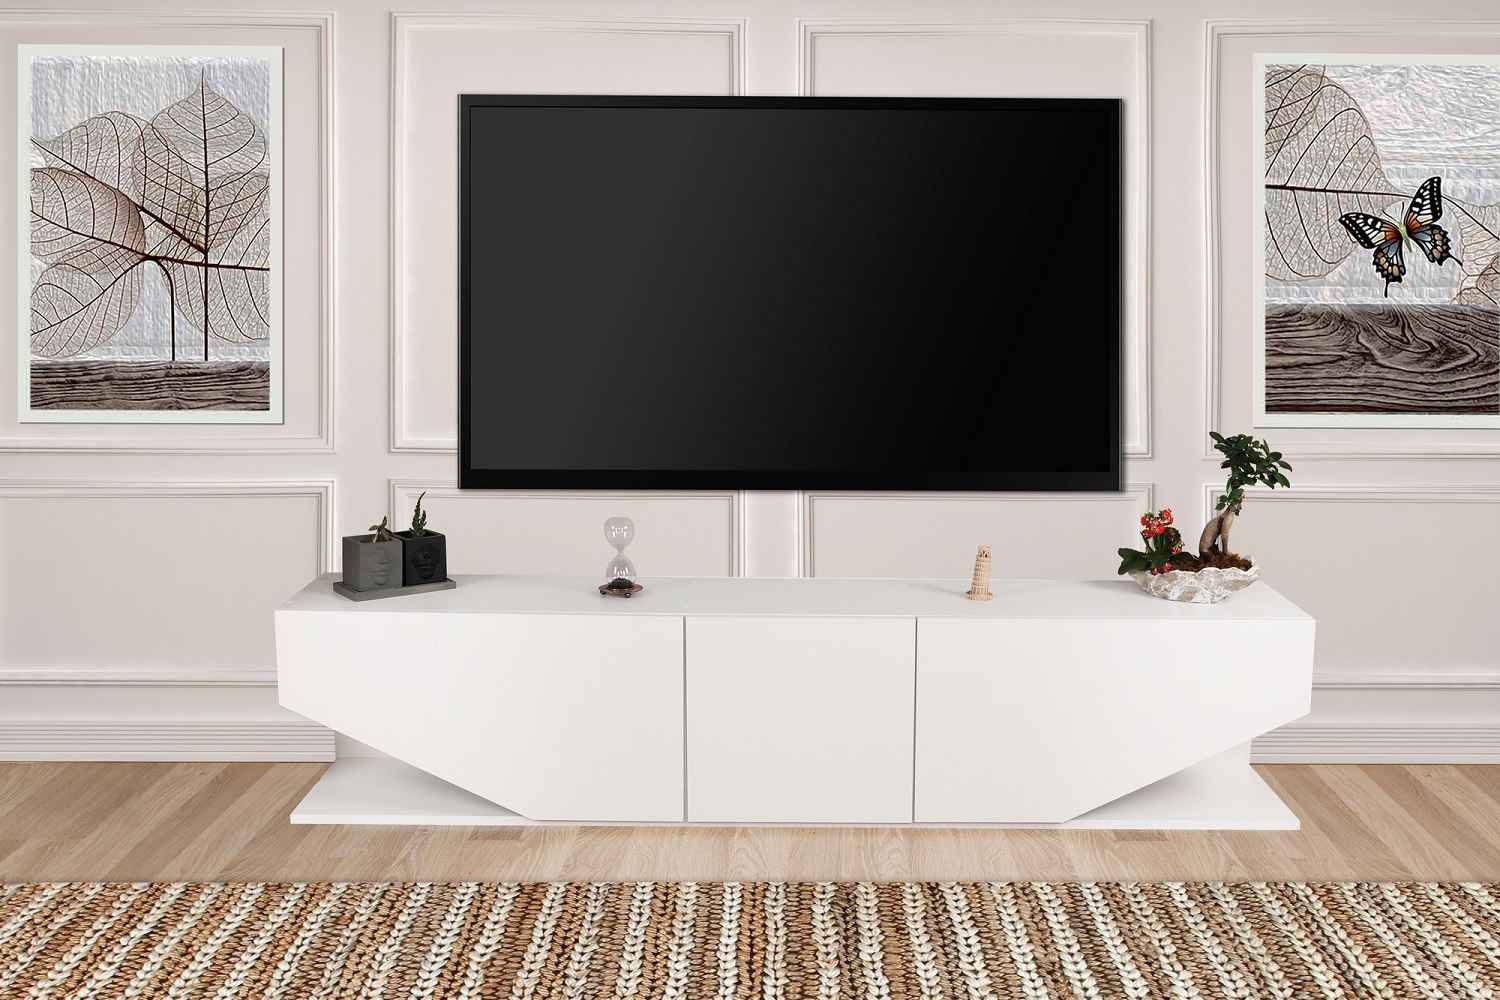 Sofahouse Designový TV stolek Layla 180 cm bílý